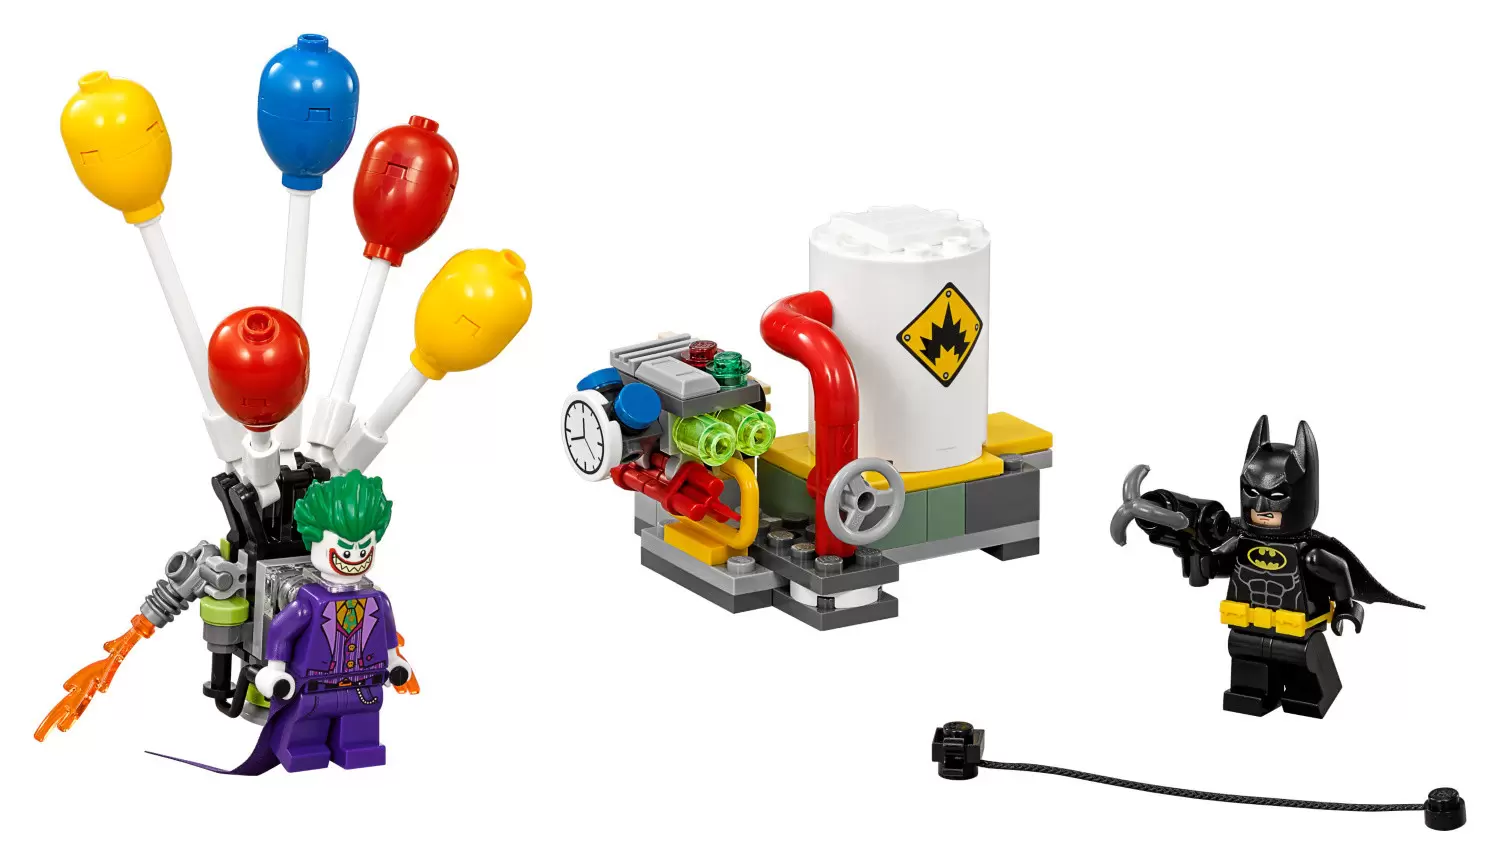 The LEGO Batman Movie - The Joker Balloon Escape